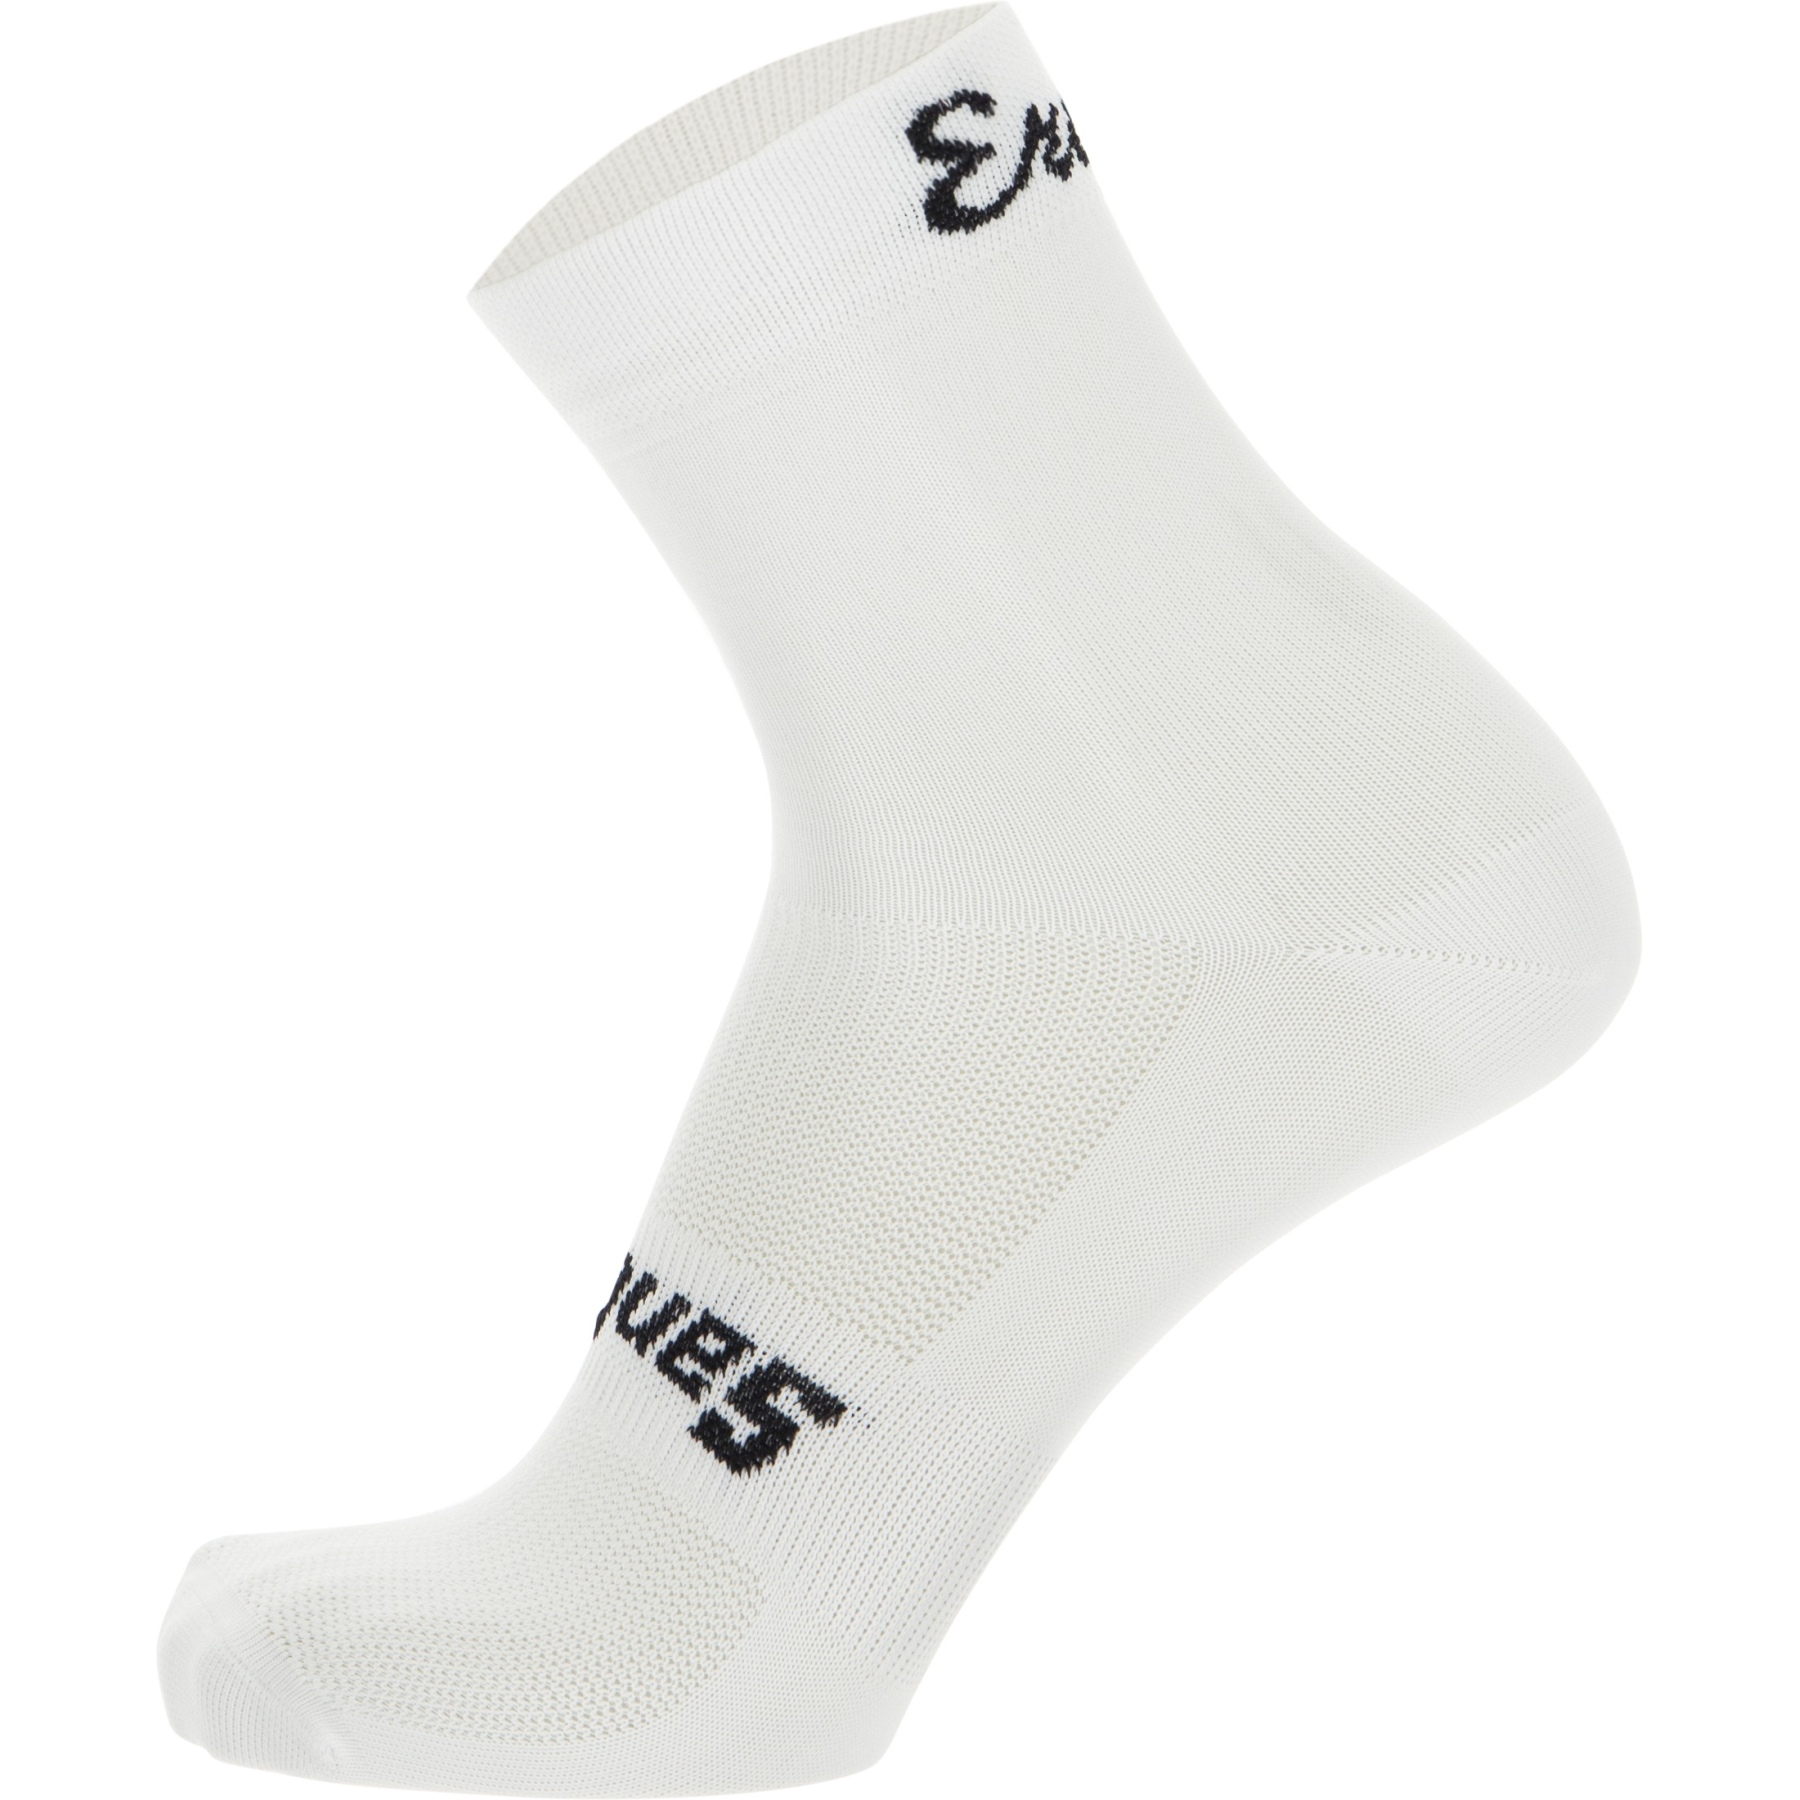 Produktbild von Santini Eroica High Profile Socken ER652HPEROIC - weiß BI